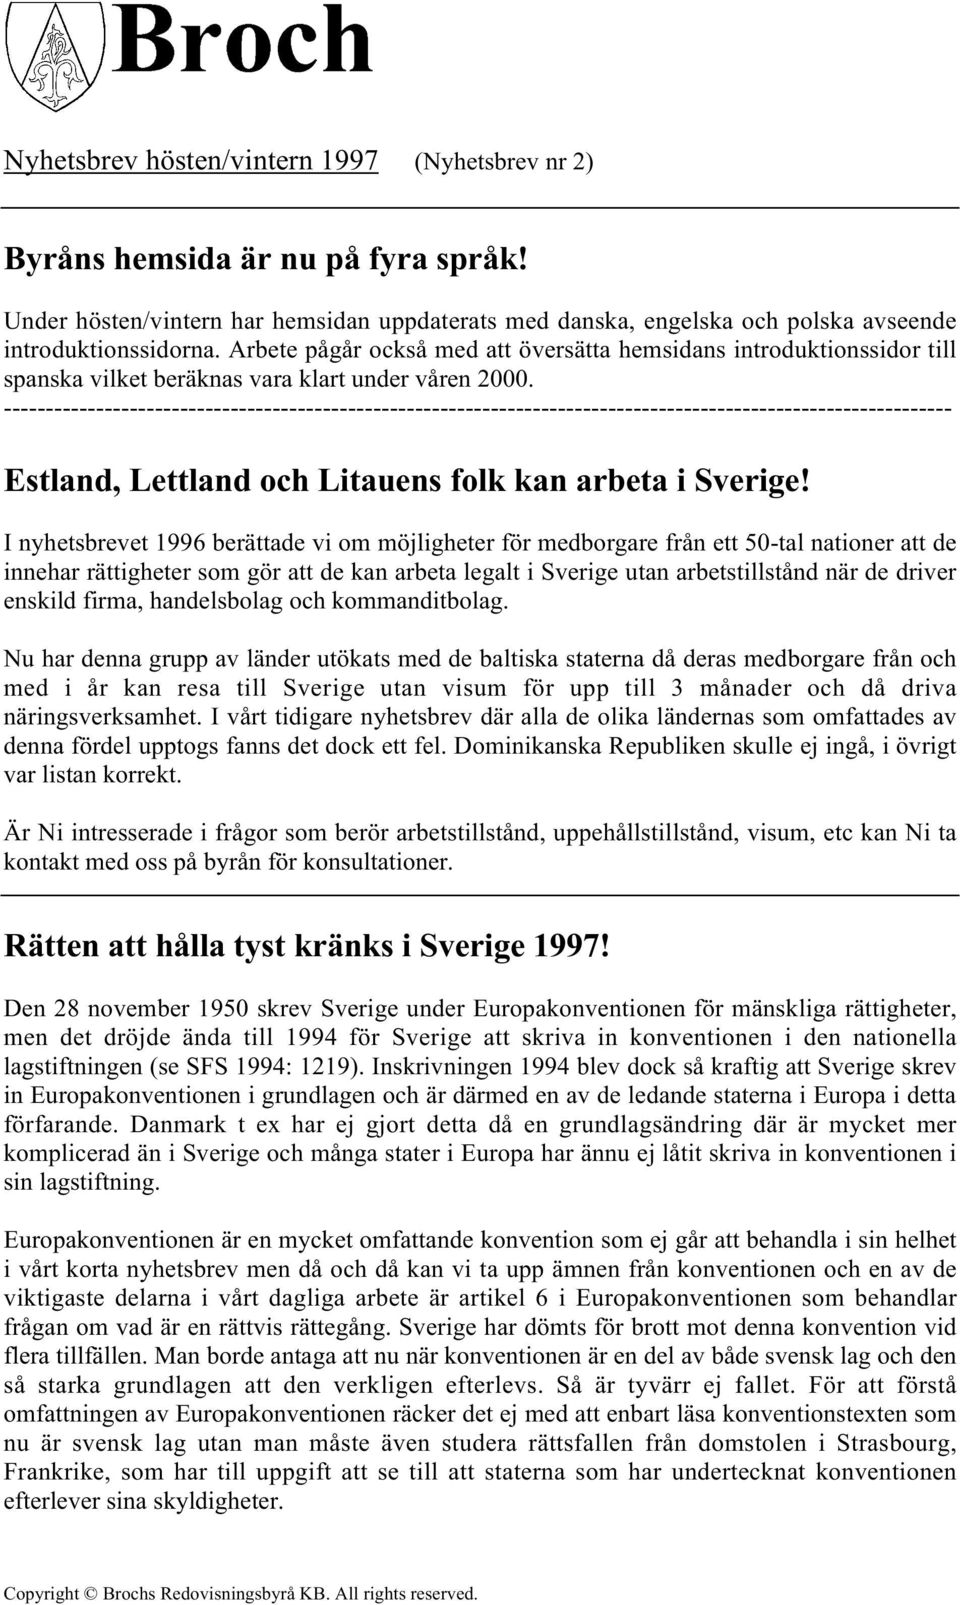 I nyhetsbrevet 1996 berättade vi om möjligheter för medborgare från ett 50-tal nationer att de innehar rättigheter som gör att de kan arbeta legalt i Sverige utan arbetstillstånd när de driver